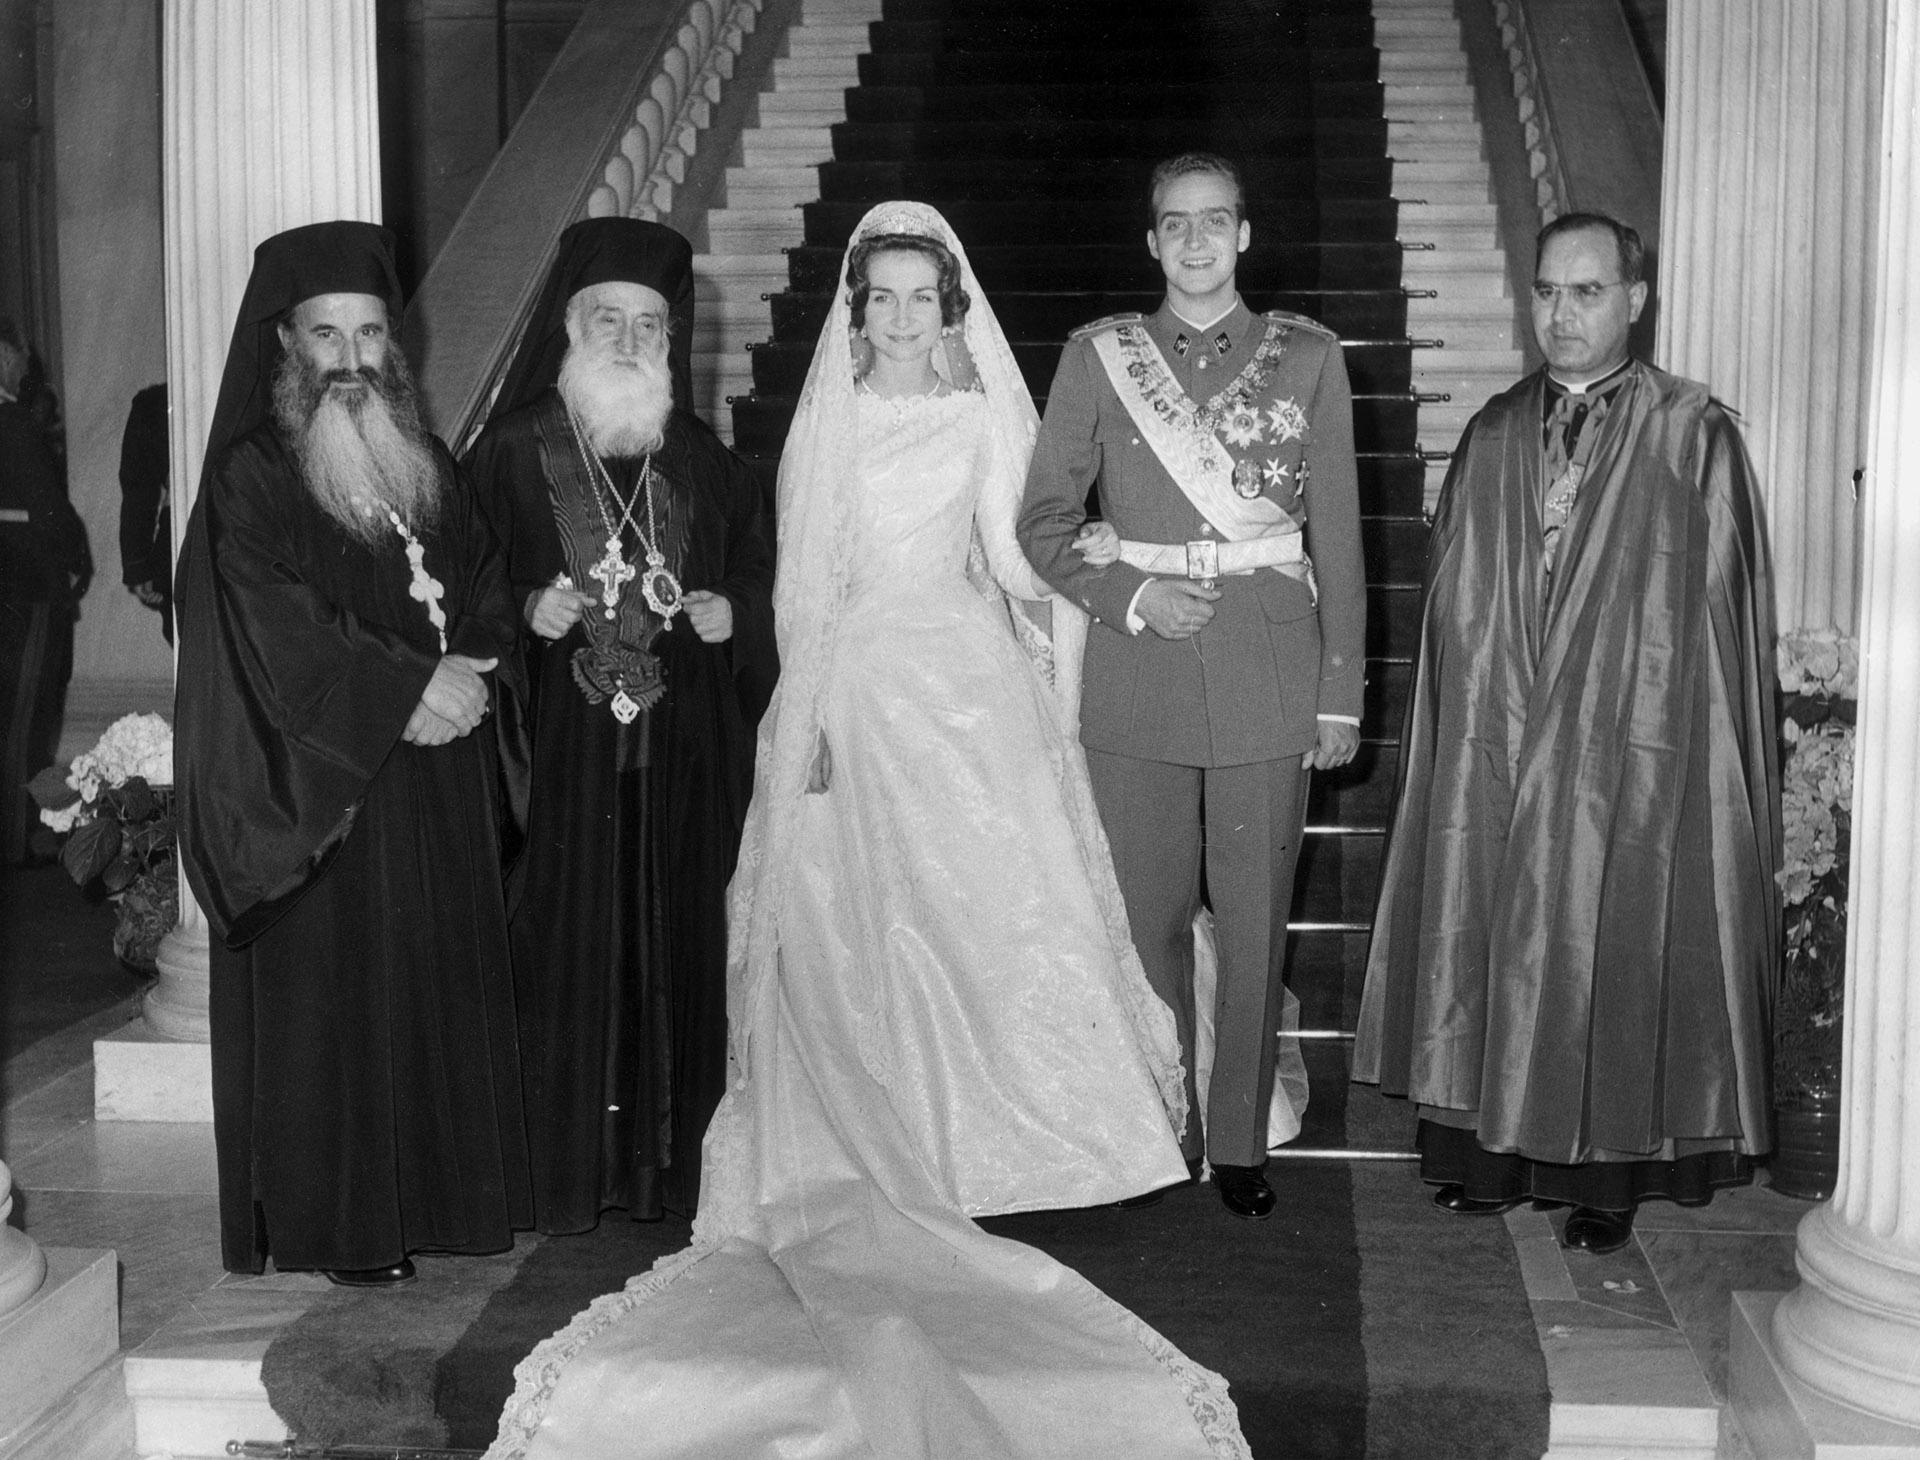 El casamiento de Juan Carlos y Sofía de Grecia (Keystone/Getty Images)